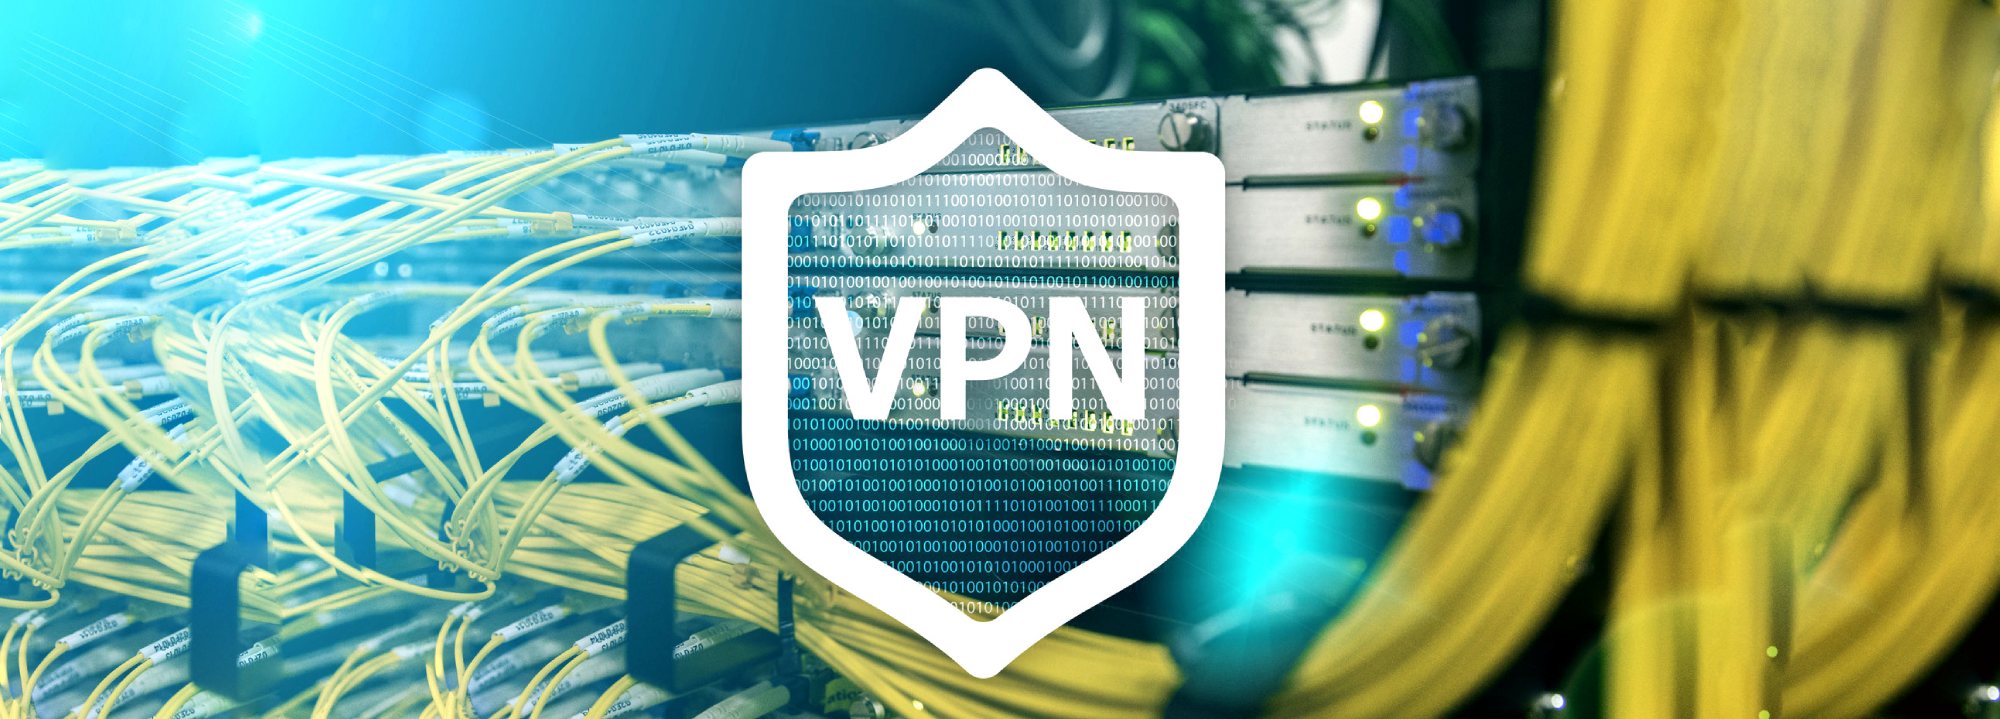 Легко настраиваем VPN на своем сервере для macbook и ios